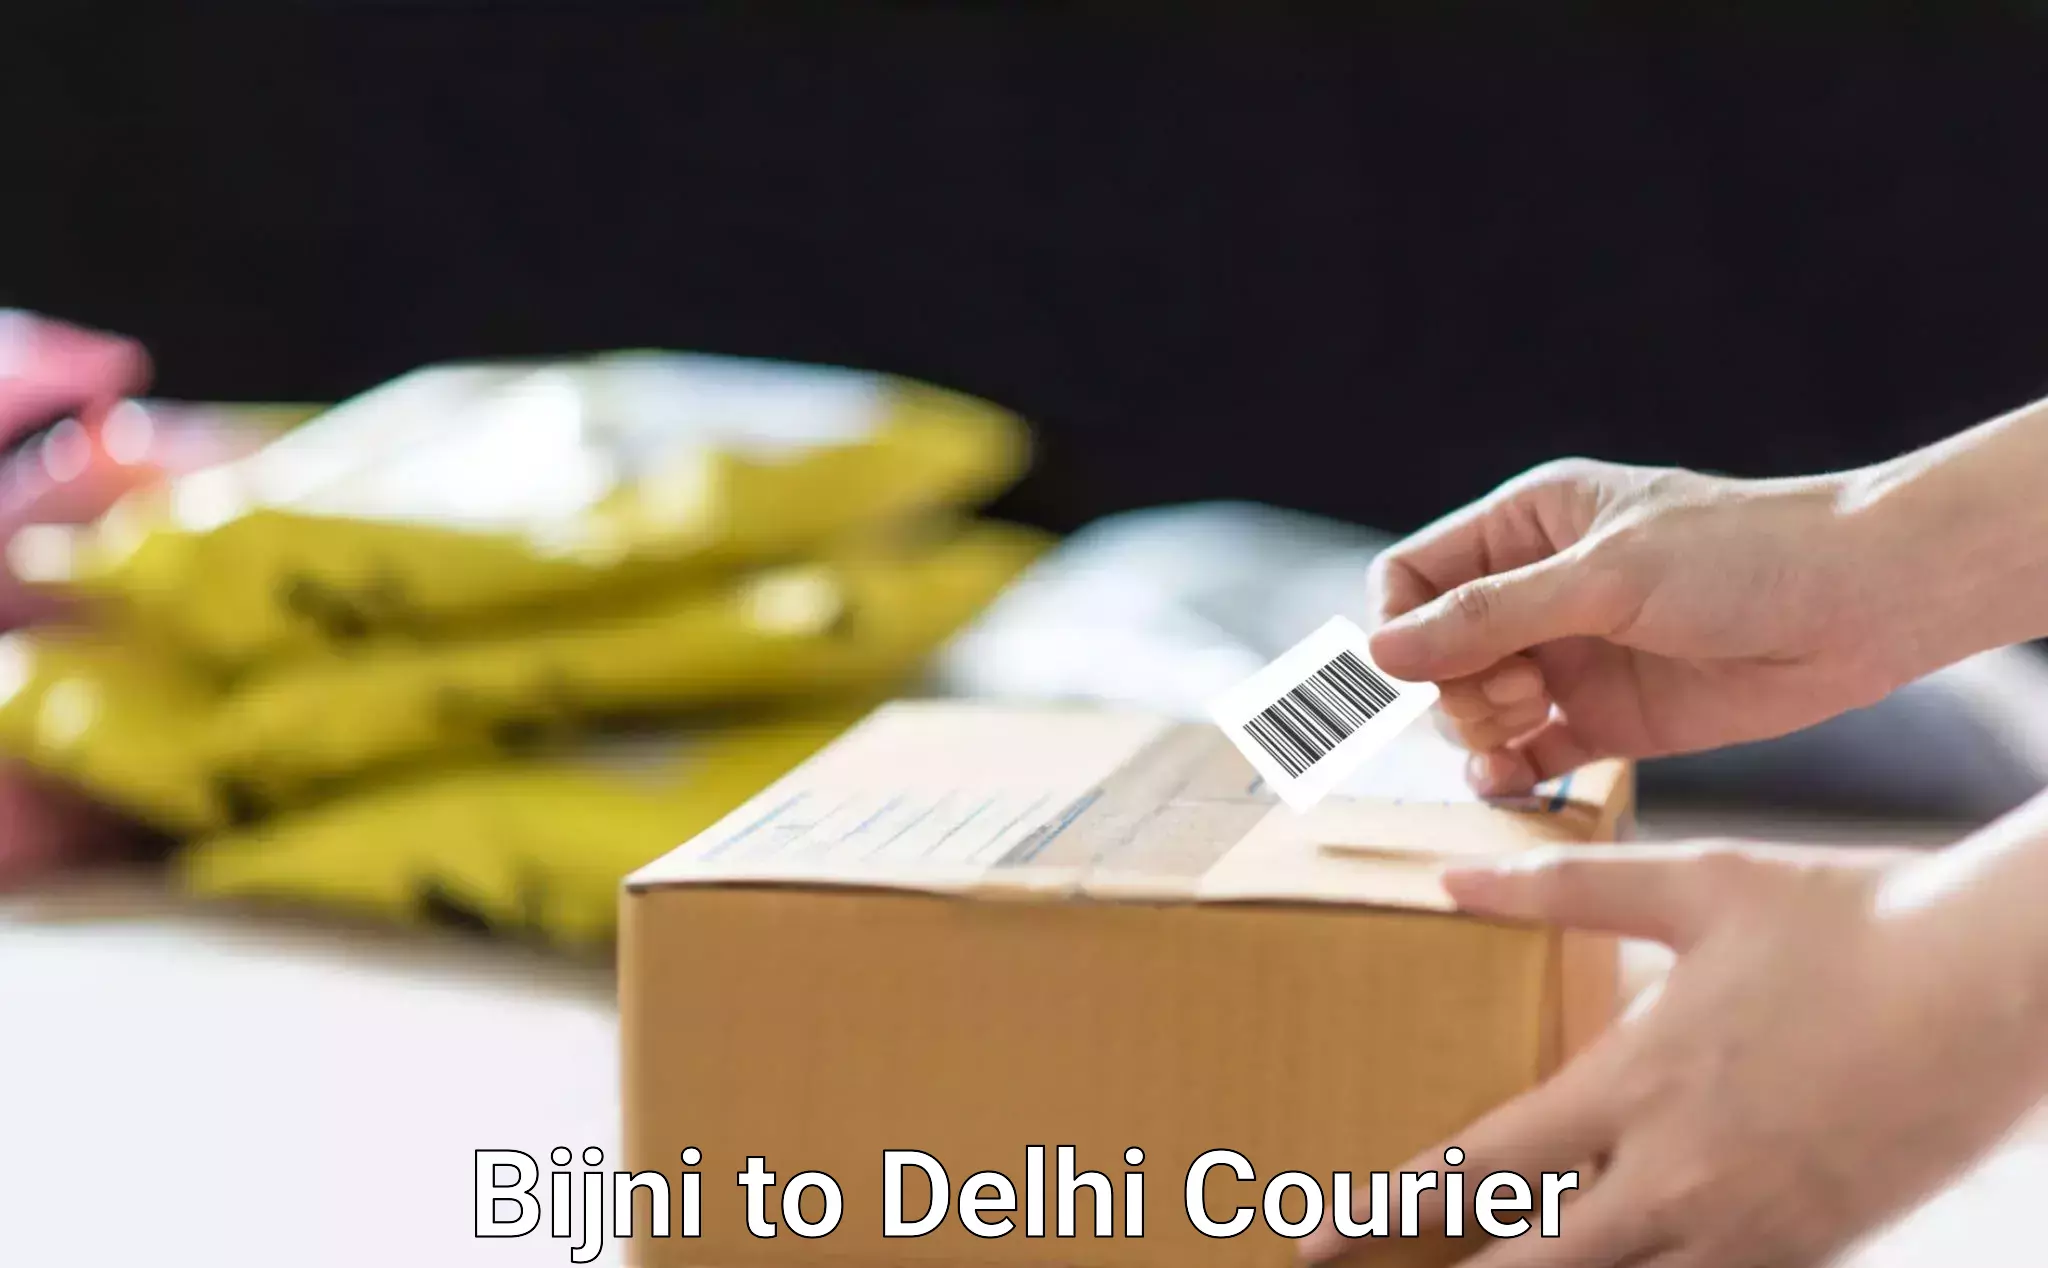 Smart shipping technology Bijni to Delhi